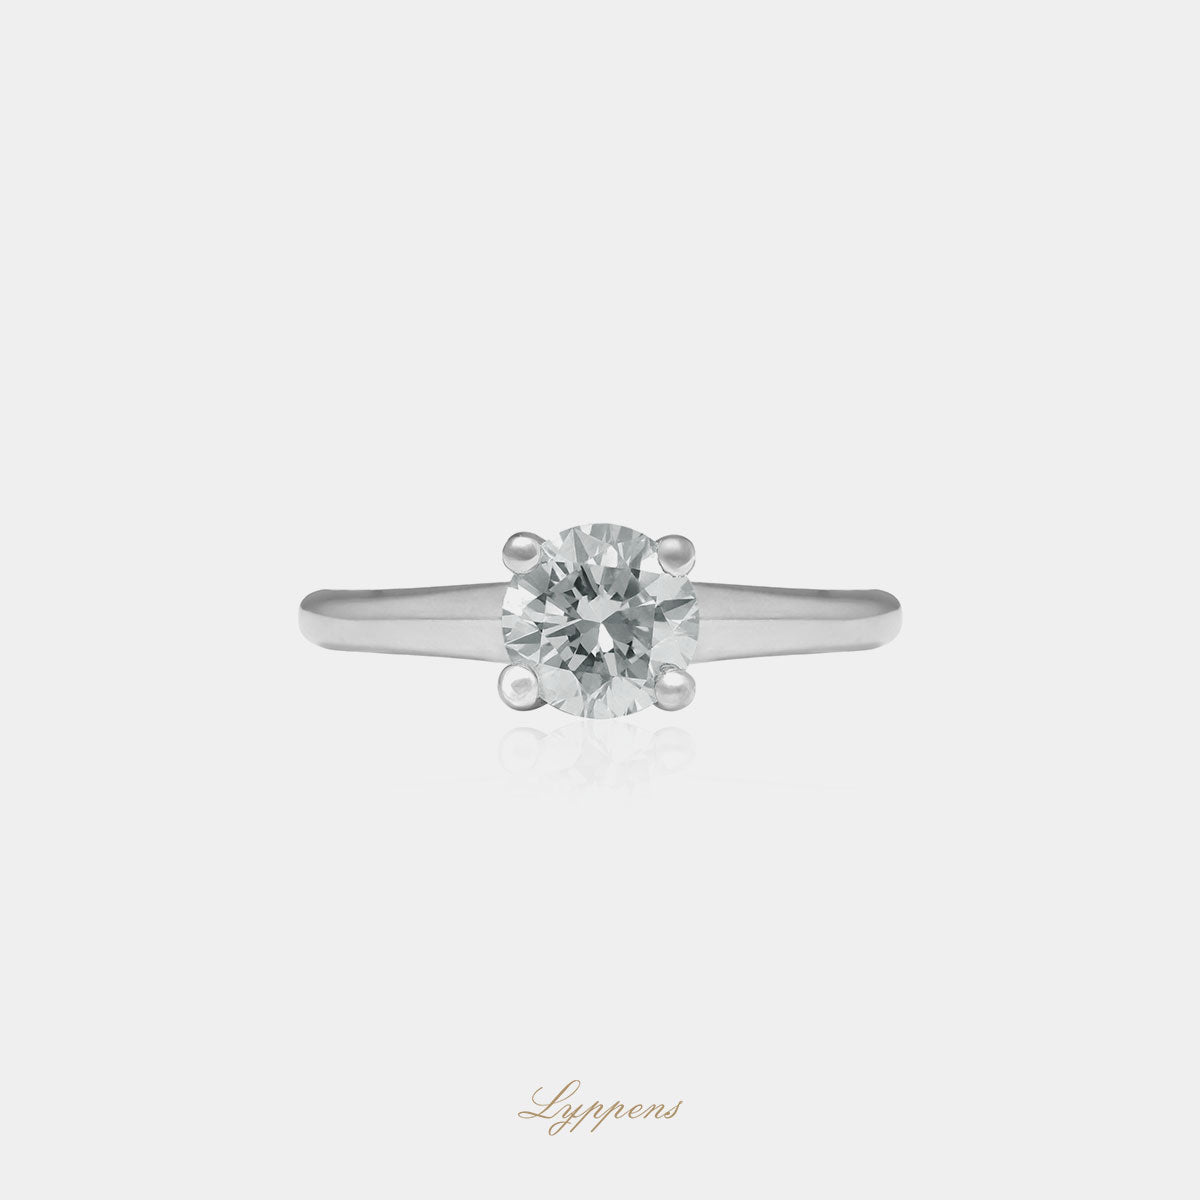 Witgouden solitiar verlovingsring, deze ring is in het midden gezet met een briljant geslepen diamant.